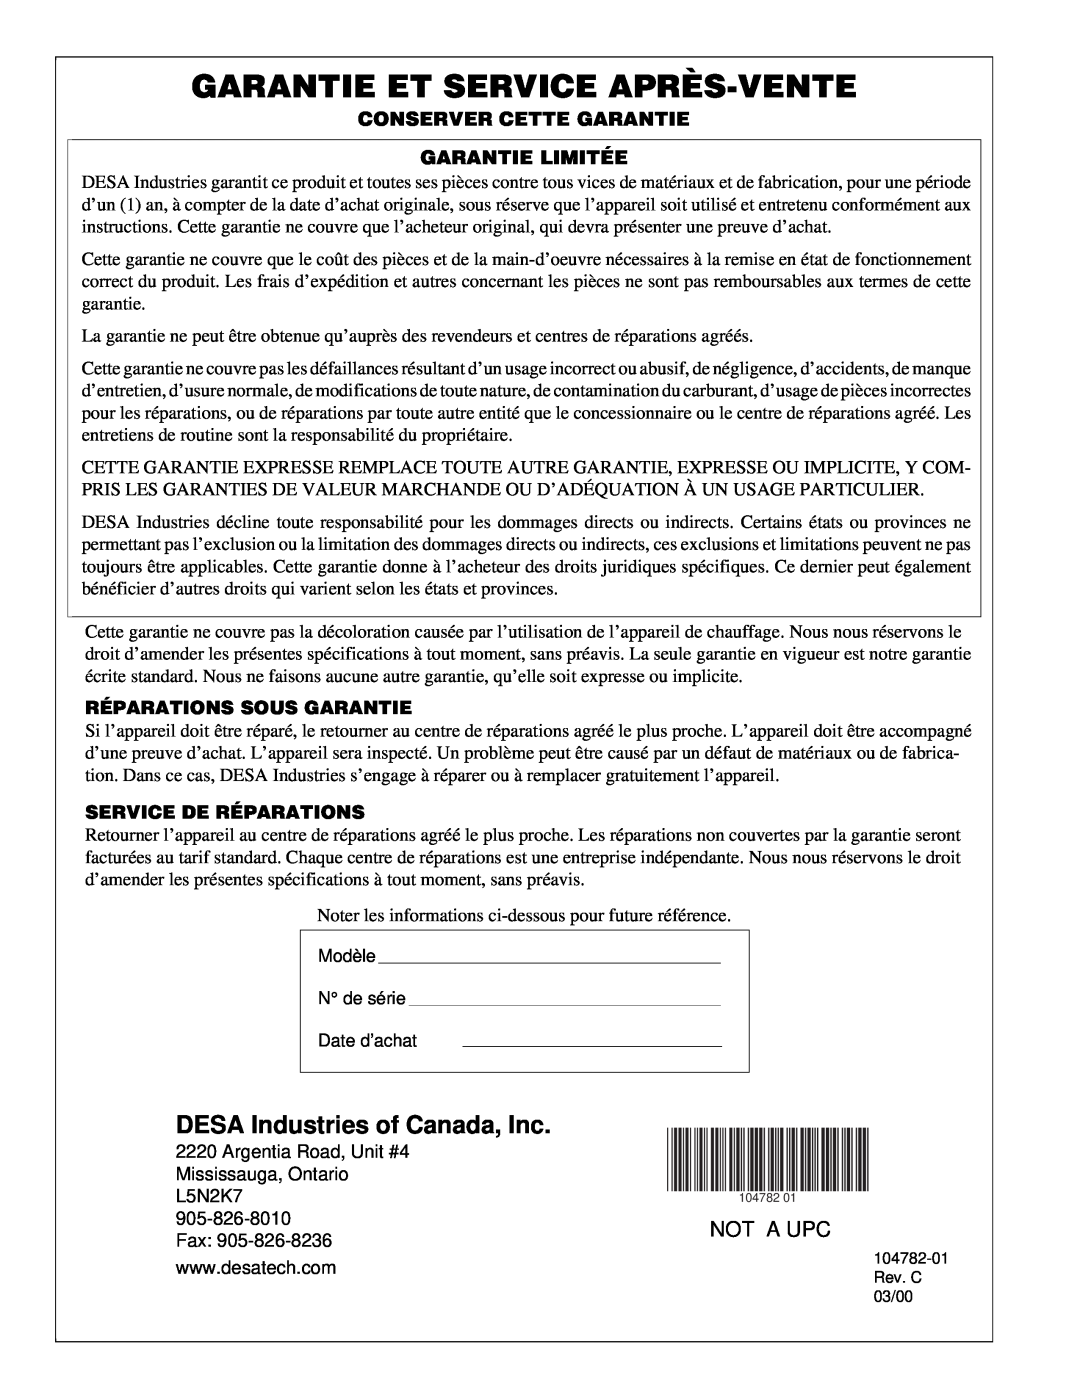 Desa RCCP200V Garantie Et Service Après-Vente, DESA Industries of Canada, Inc, Not A Upc, Réparations Sous Garantie 